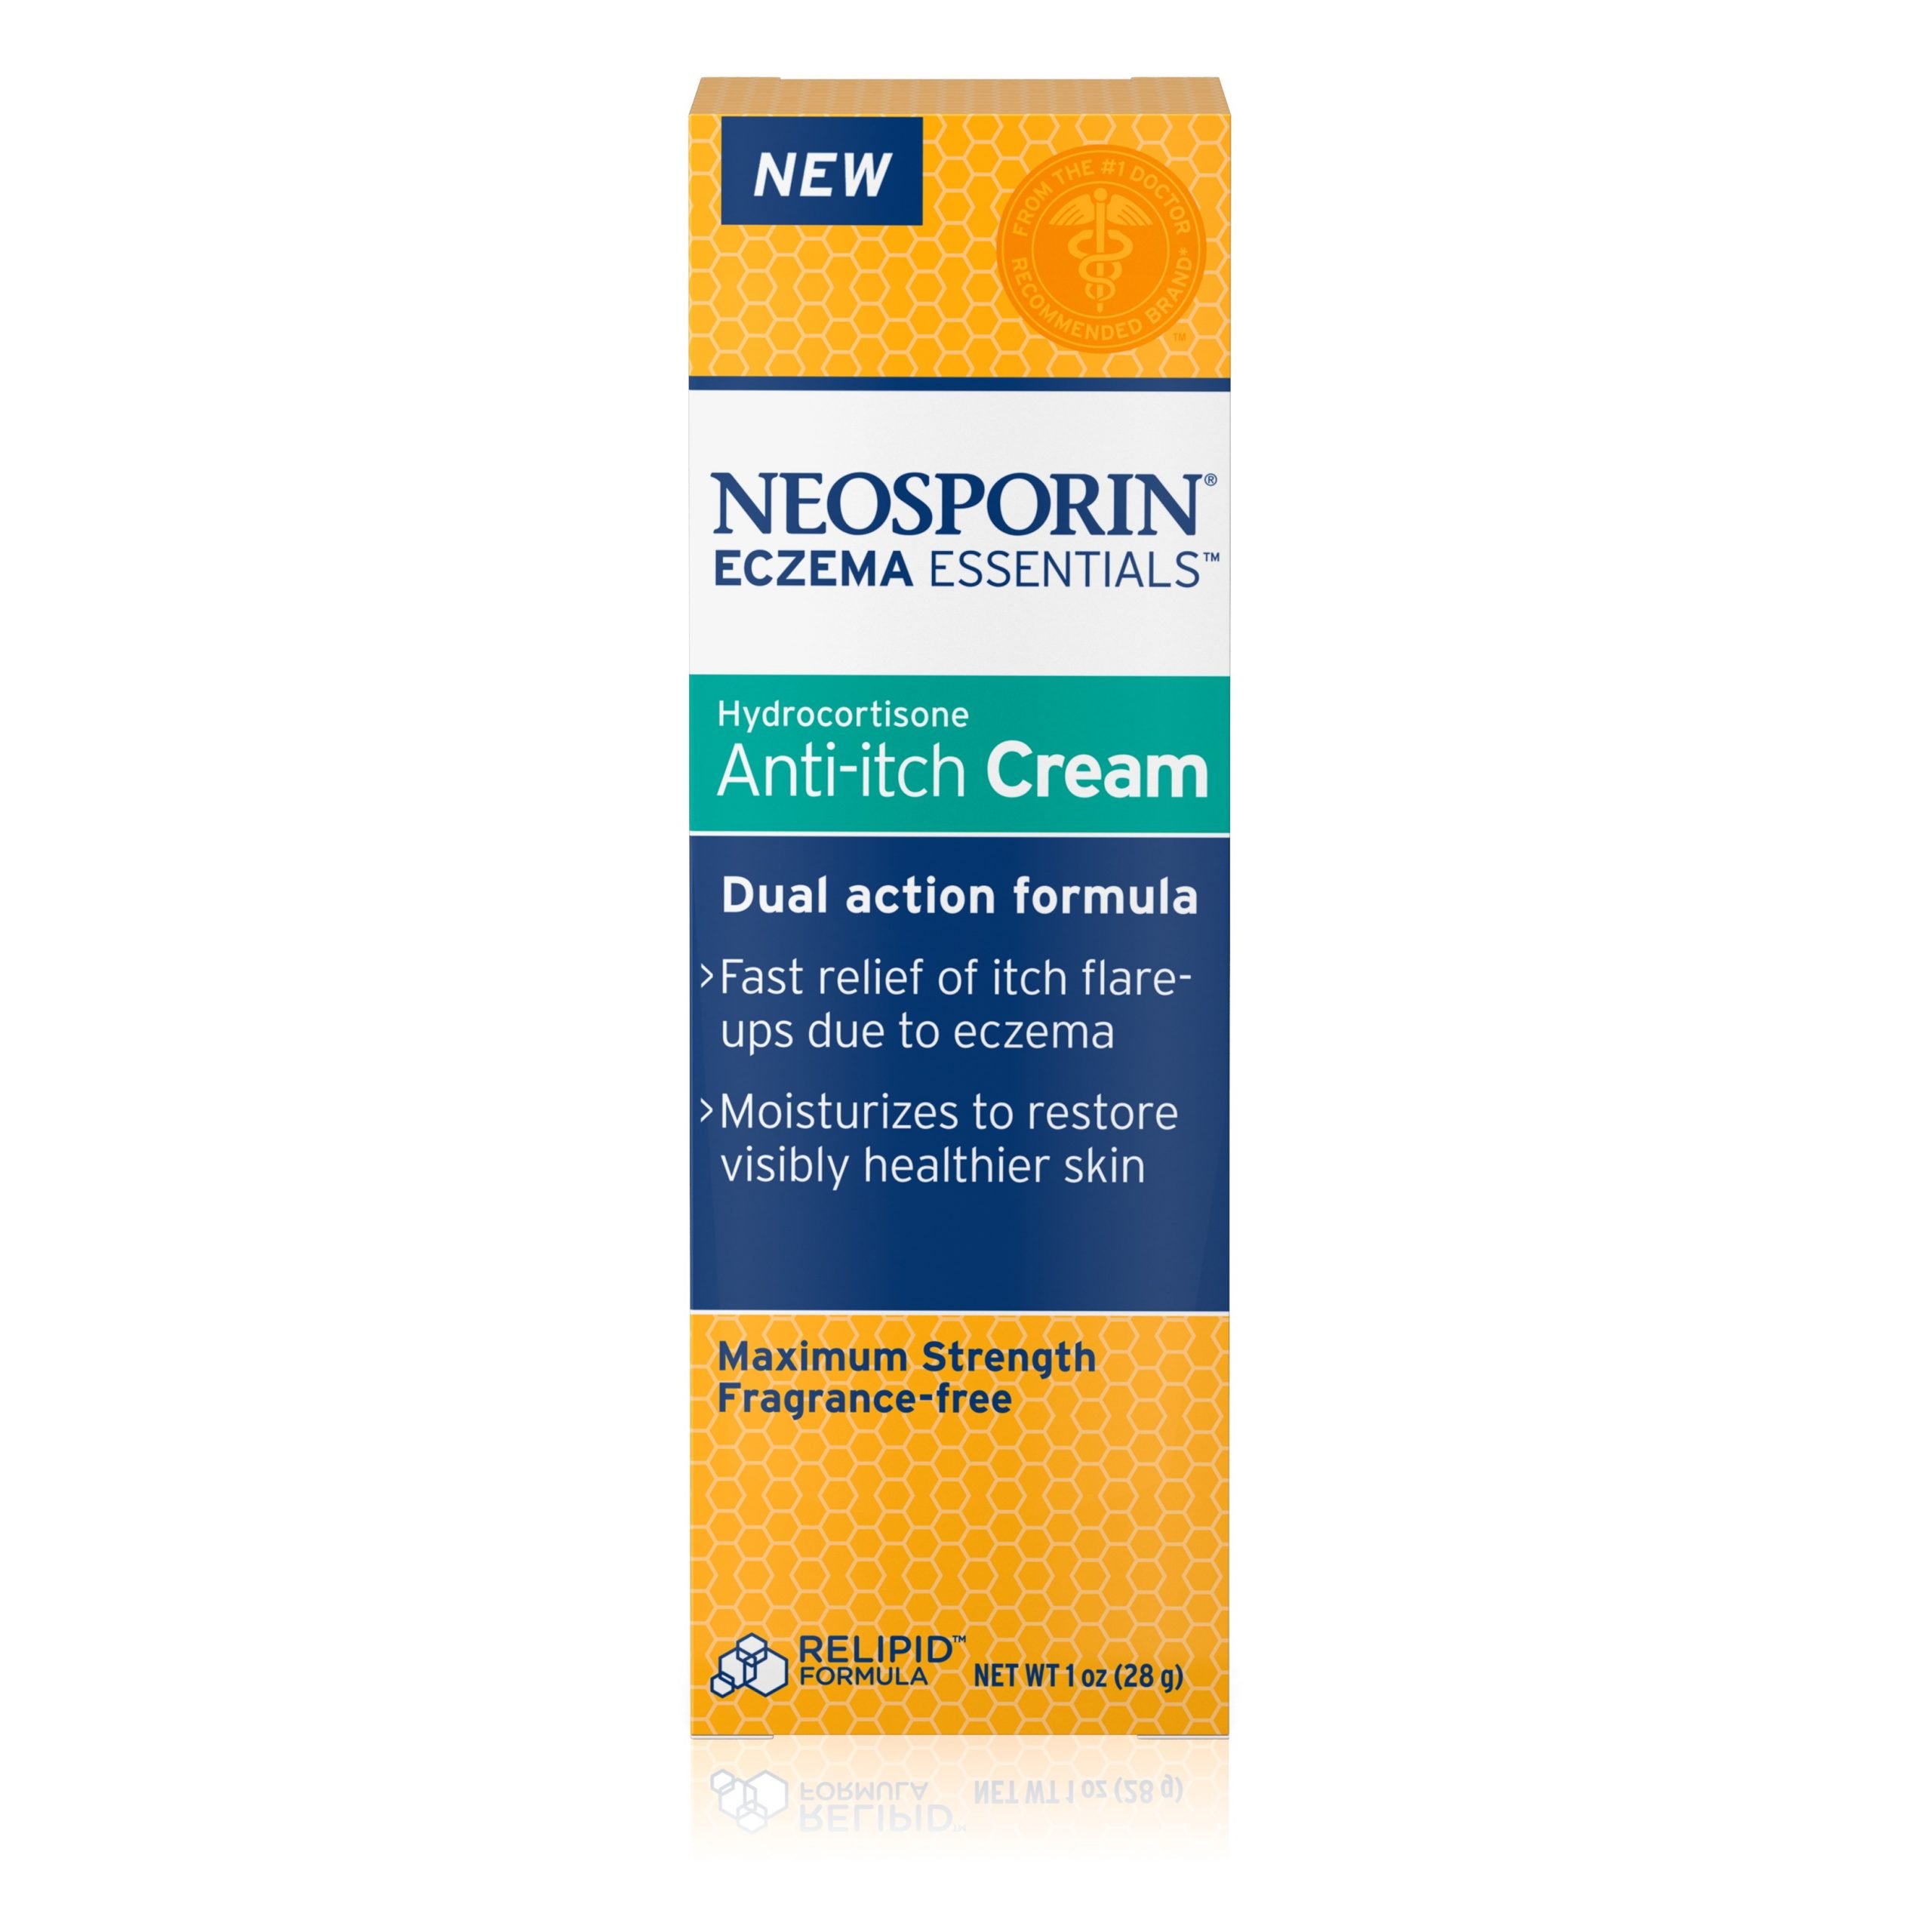 Neosporin Eczema Essentials Hydrocortisone Anti